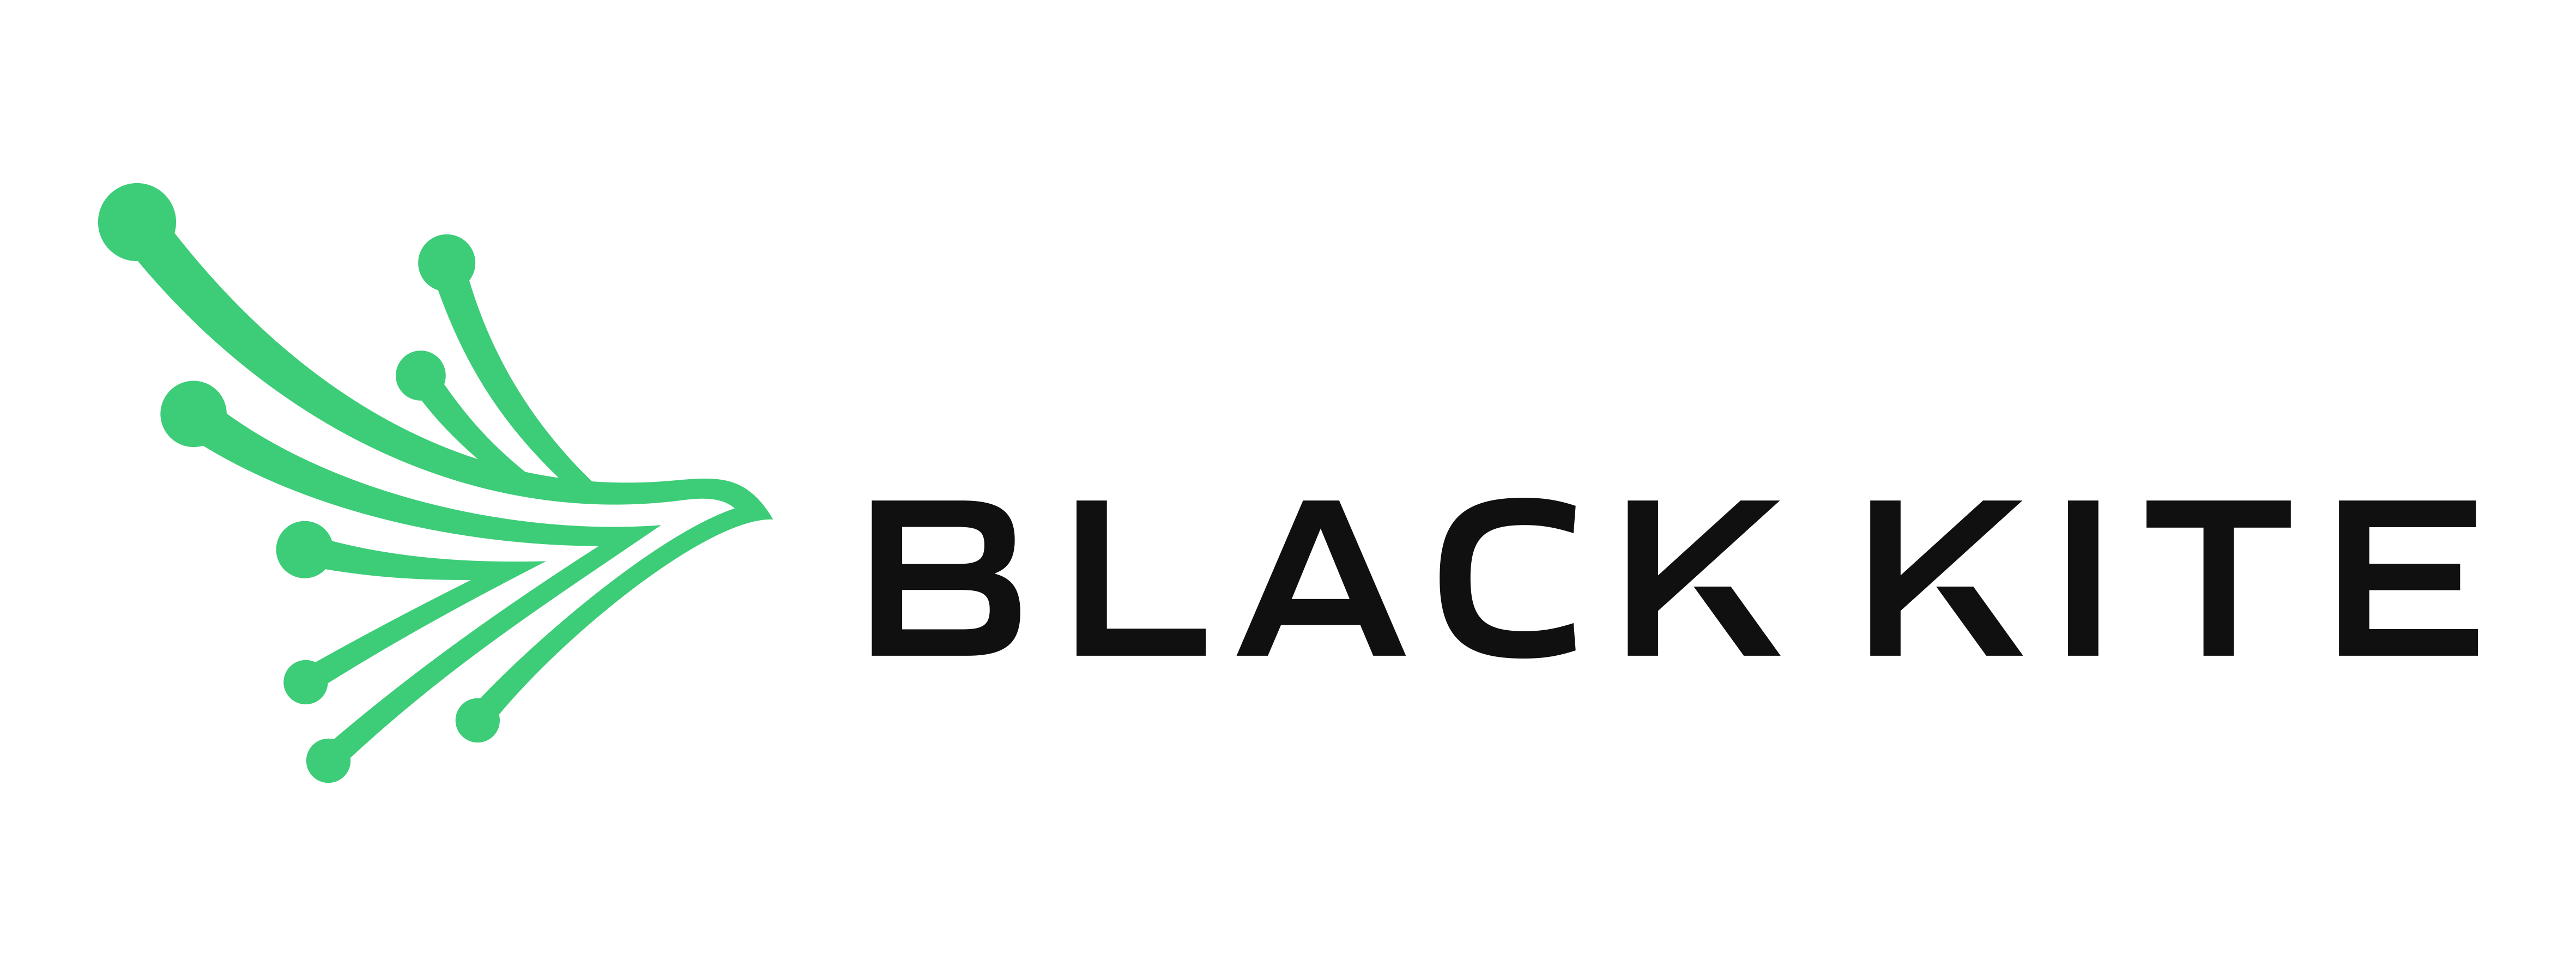 Black-Kite-Logo-Horizontal-for-Light-BG-optimize